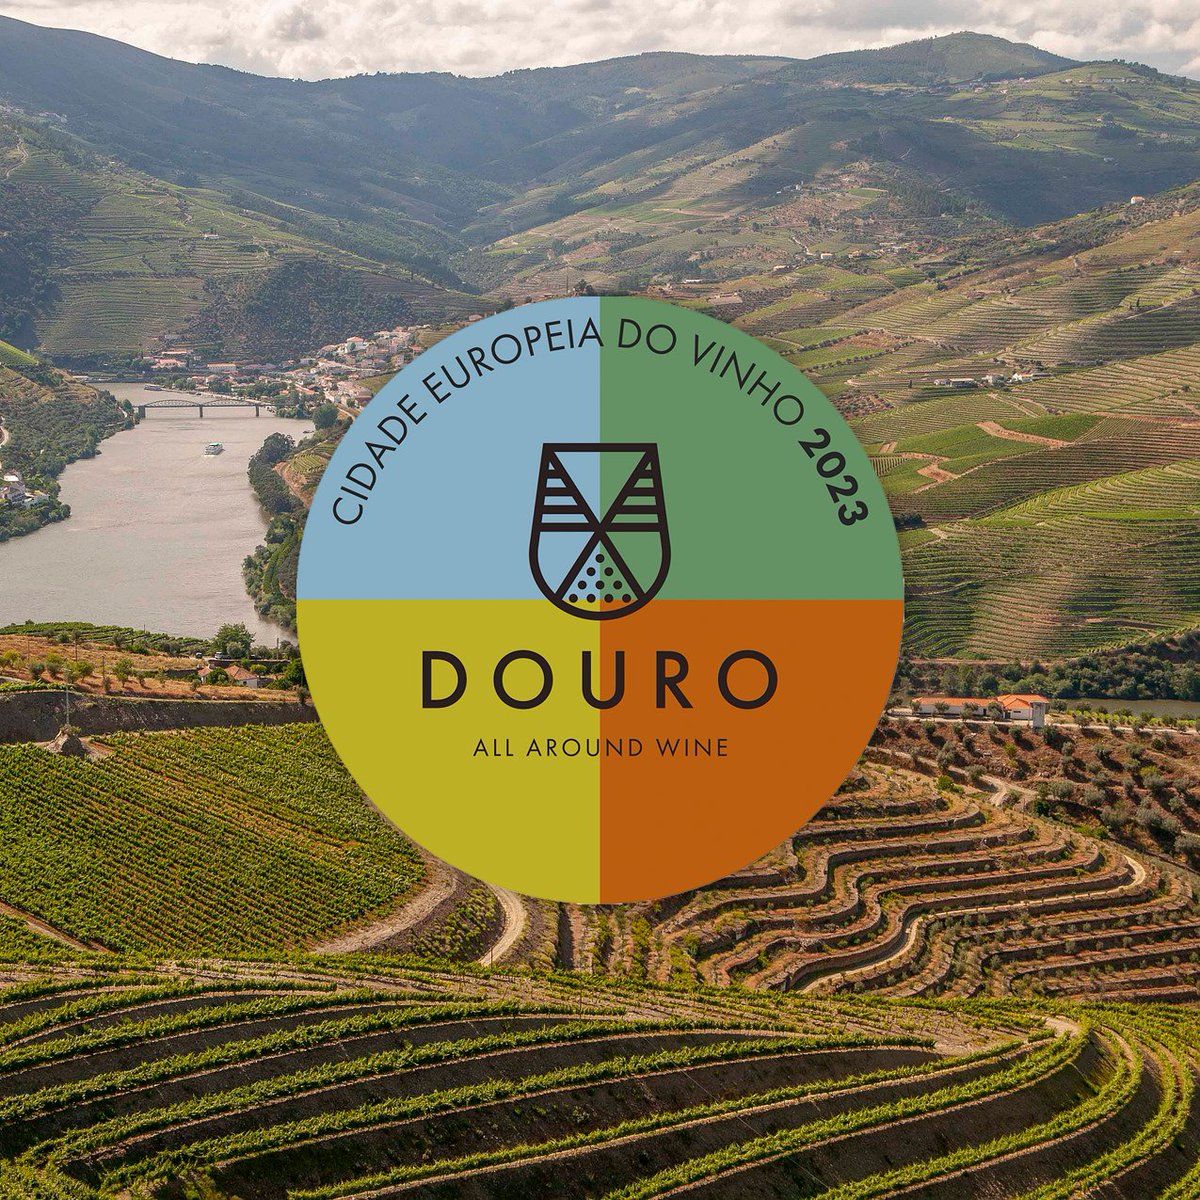 Cidade Europeia do Vinho 2023 🌍🍷 Este verão explore o Douro 🌞🍇

Prepare-se para a viagem enológica deste verão e descubra o que a Cidade Europeia do Vinho em 2023 tem para oferecer.

#GarrafeiraNacional #Douro #CidadeEuropeiadoVinho #Enoturismo #VinhosdoDouro